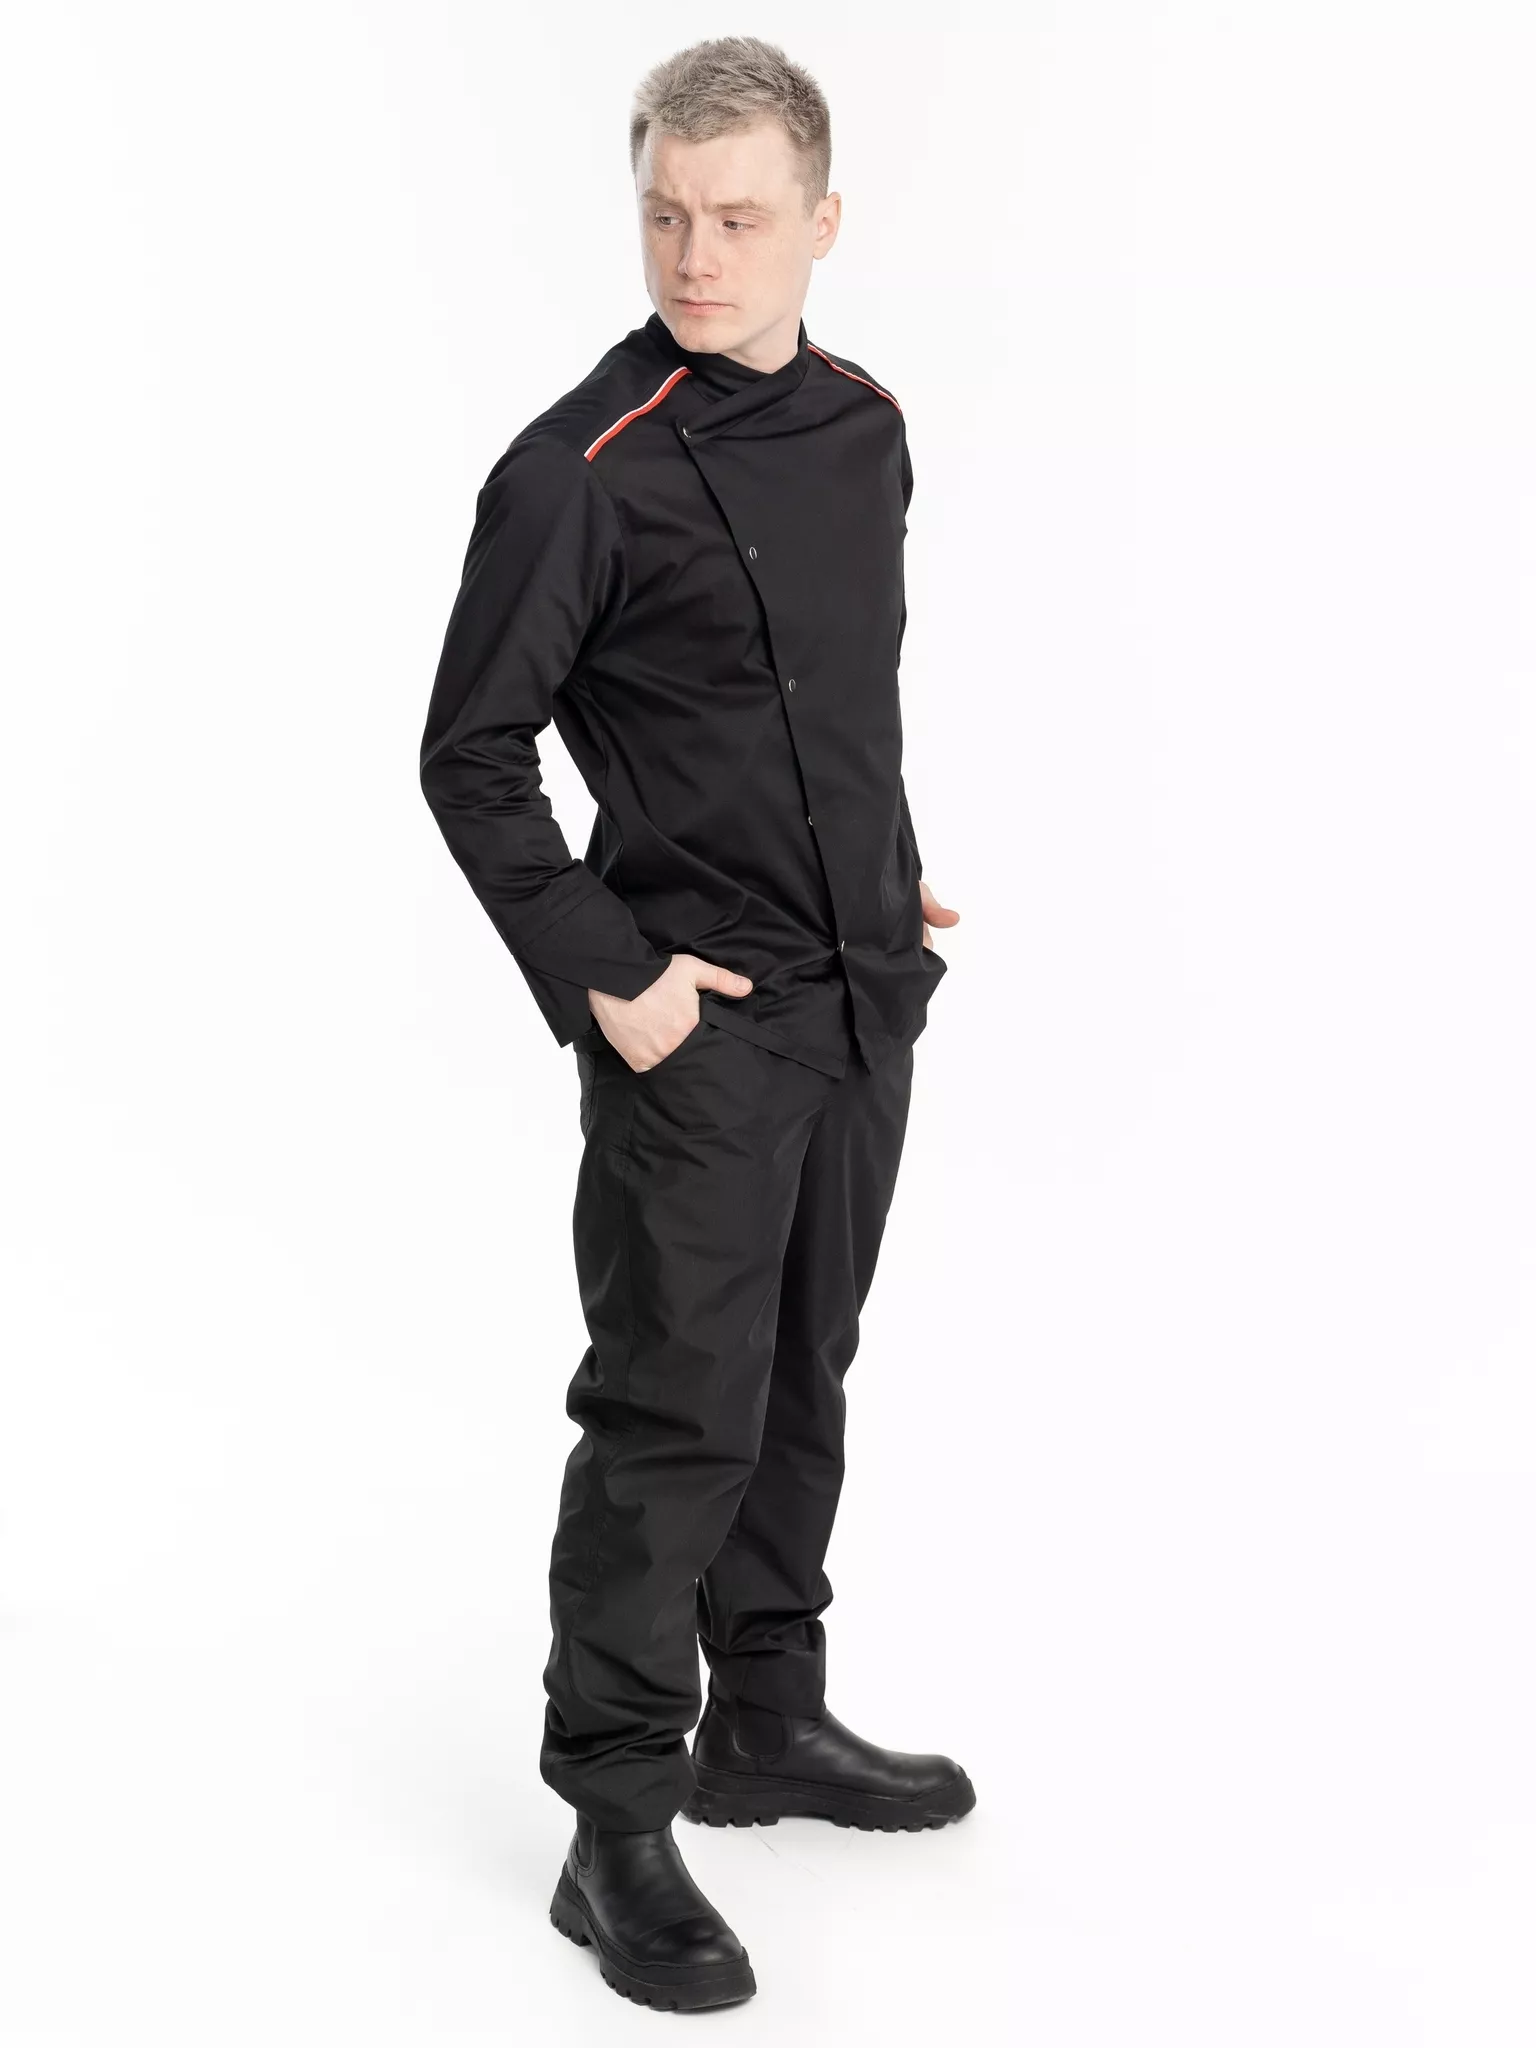 Куртка мужская КМ.590 р.60-62, рост 182-188 (цвет черный, кант красный, белый)